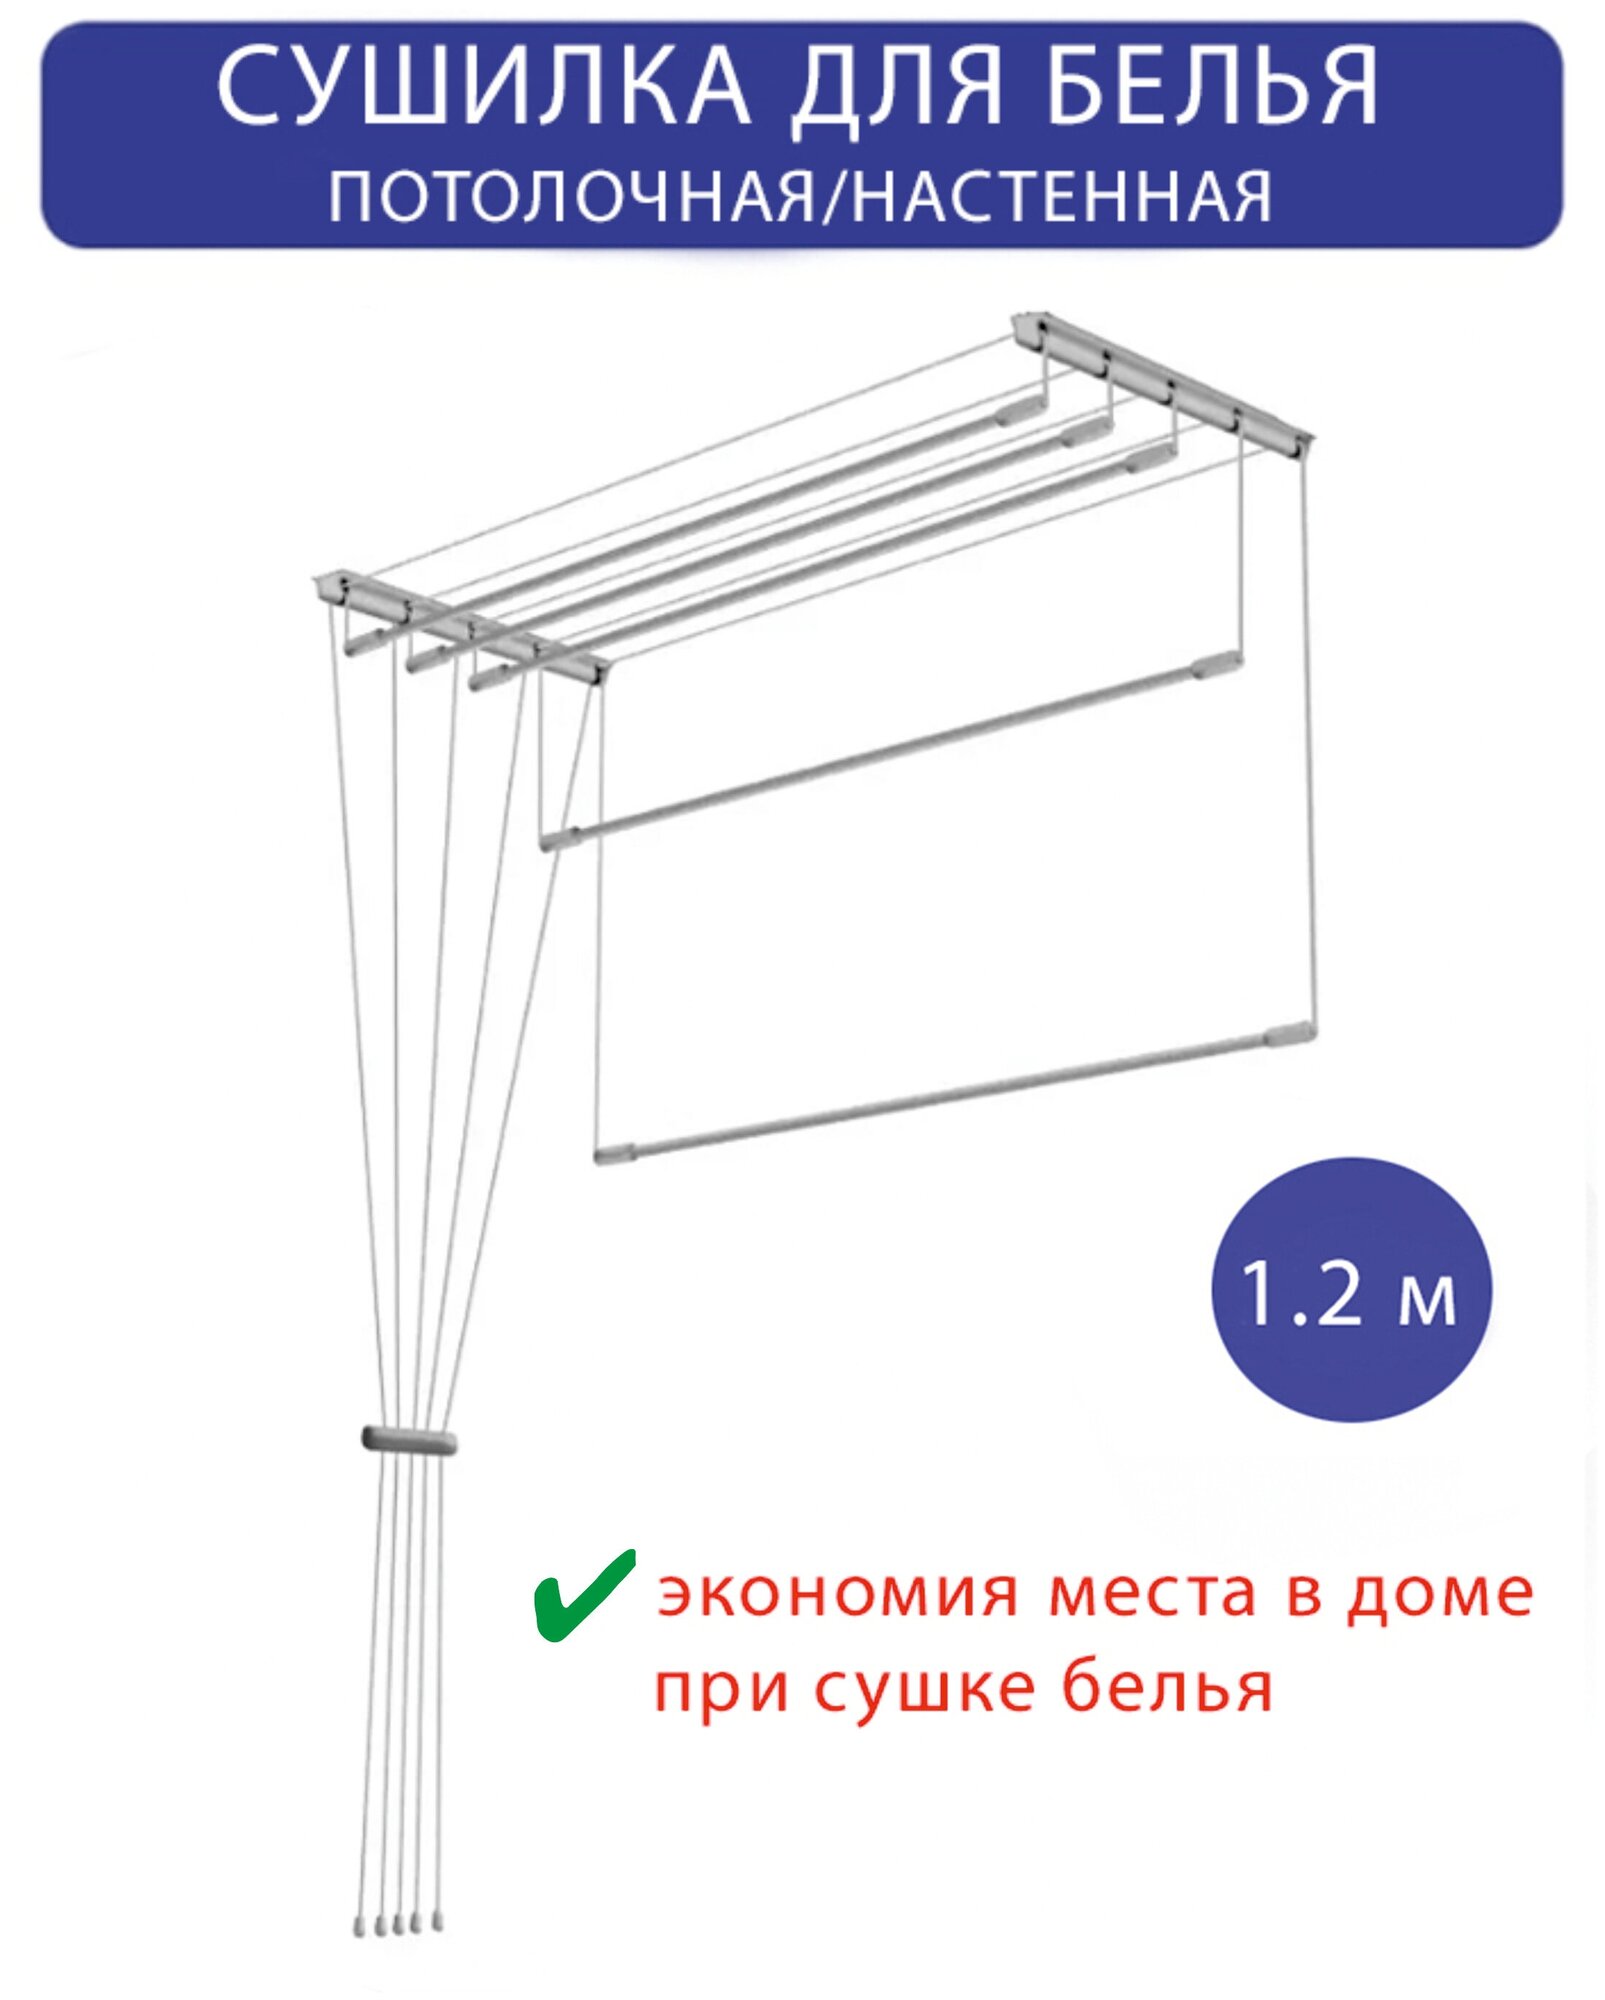 Сушилка для белья настенная/потолочная в ванную или балкон, 1,2м